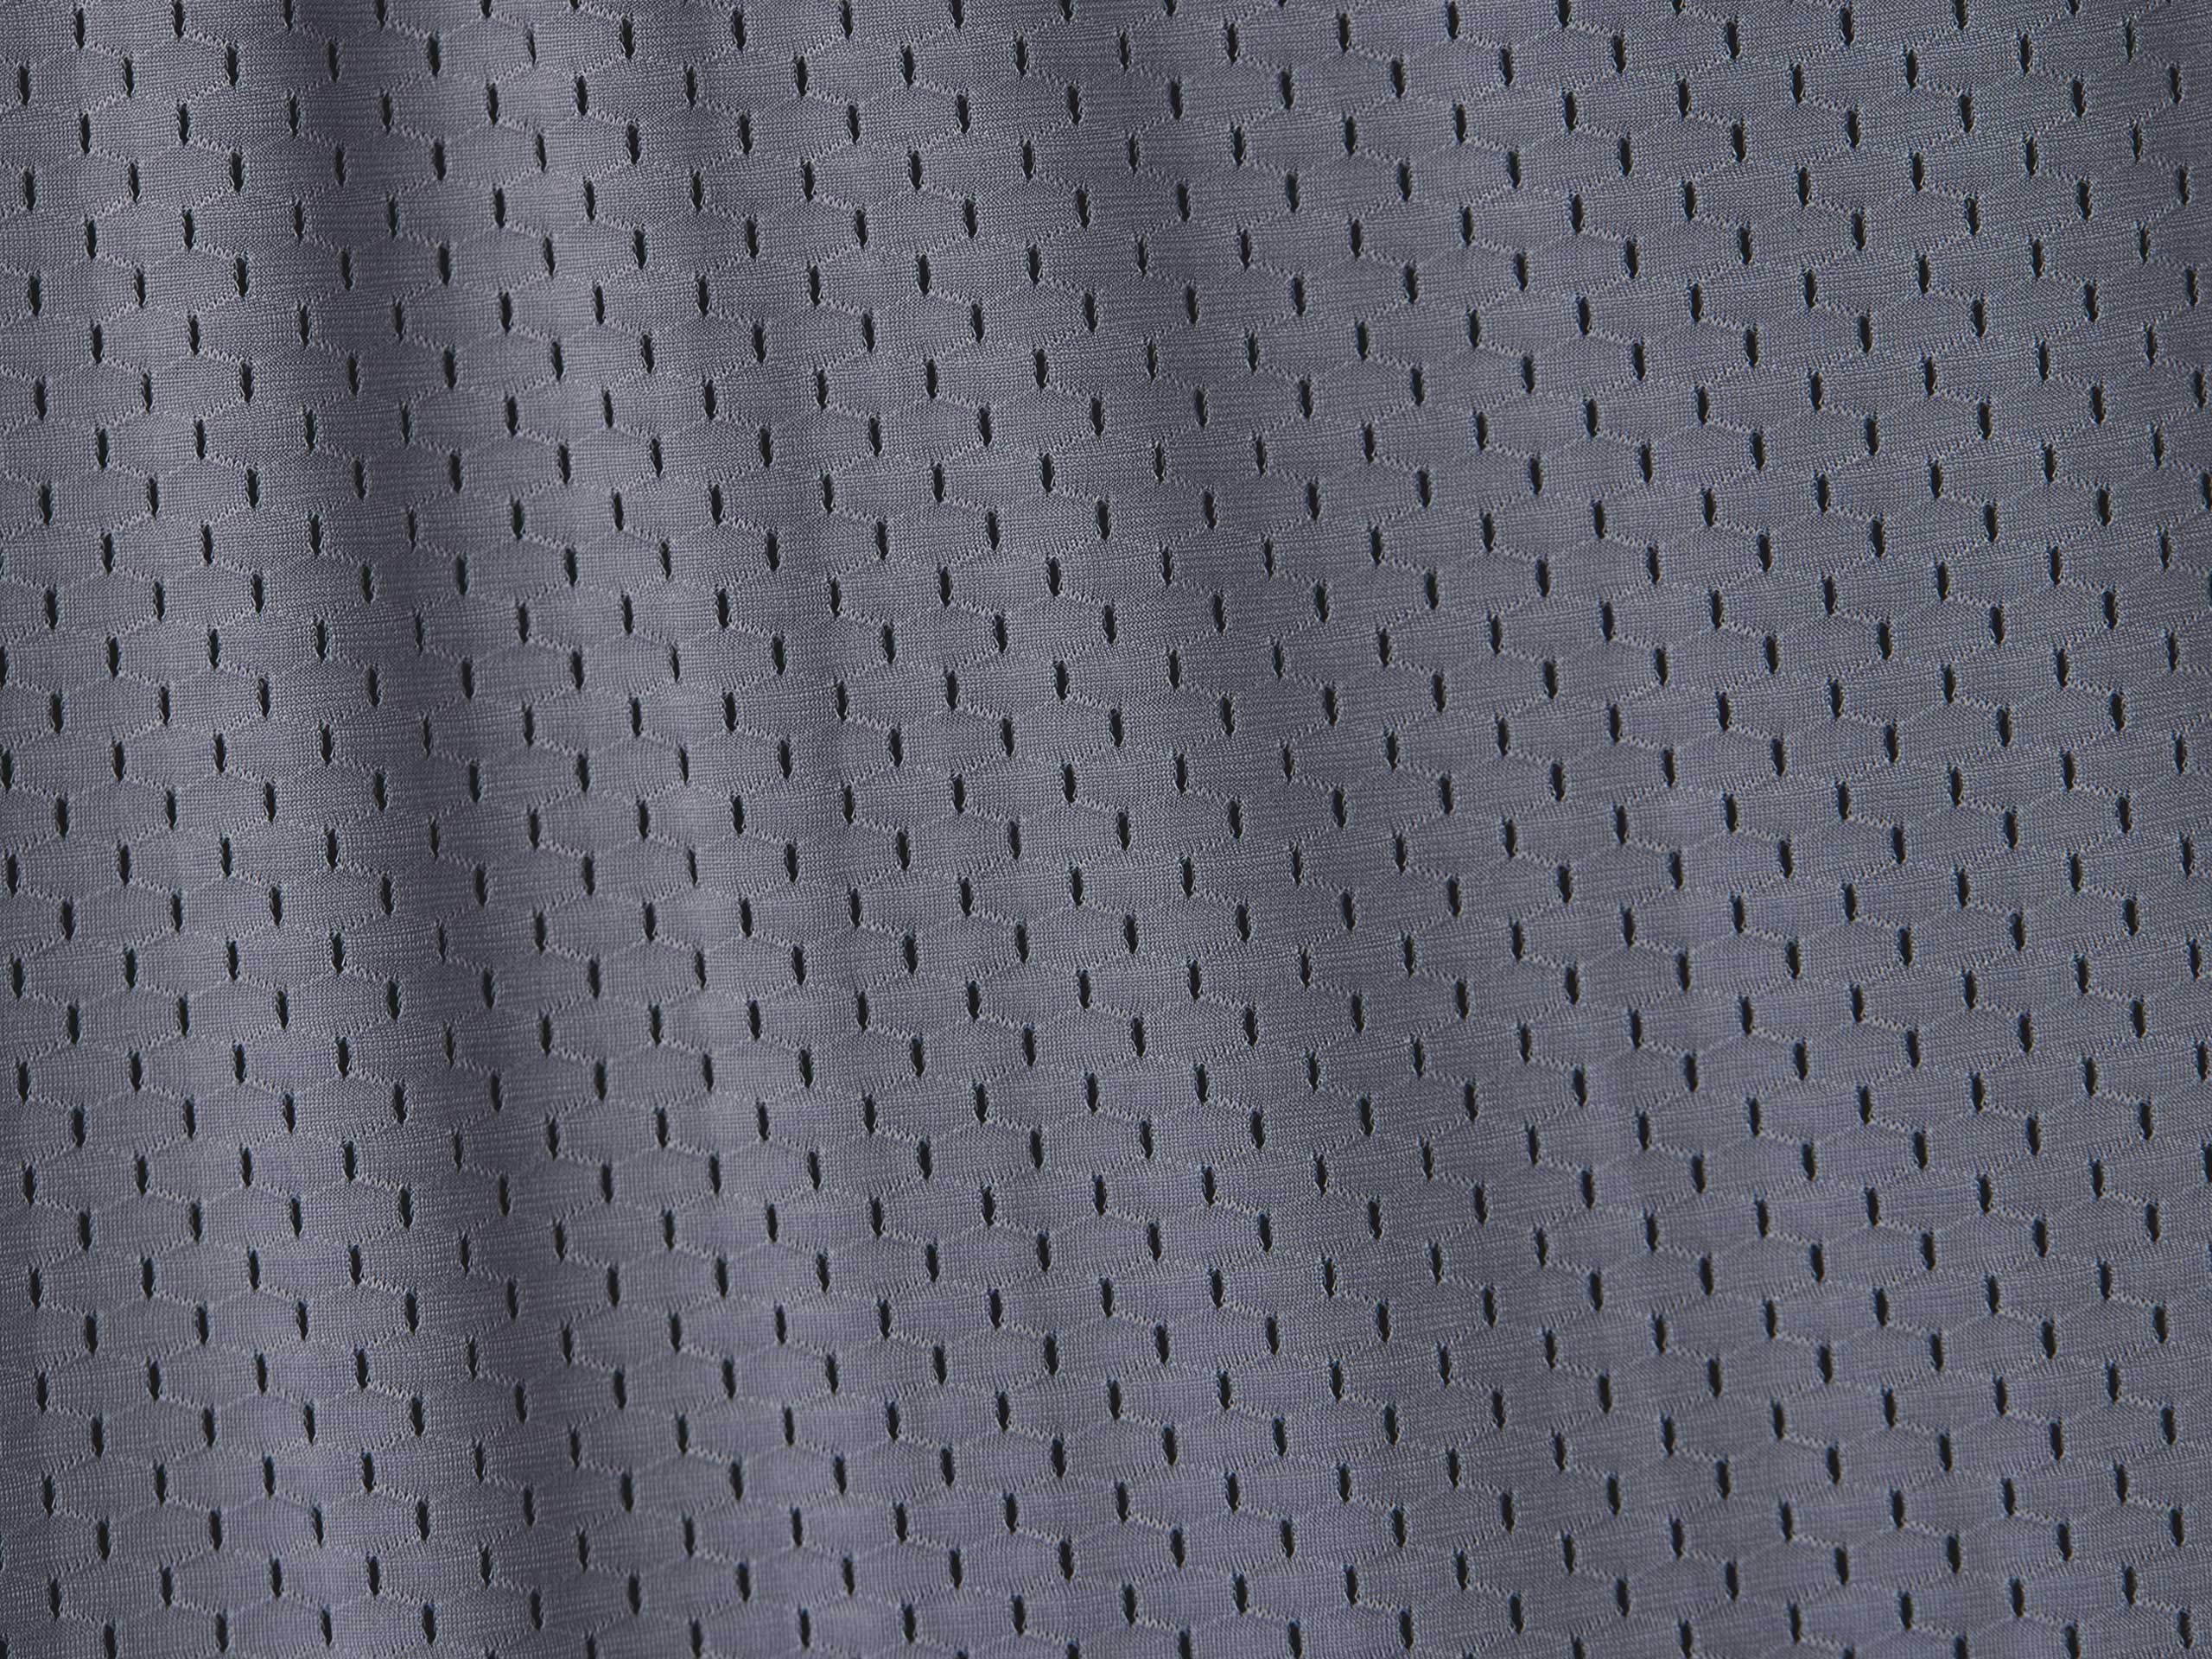 Close up detail shot of grey mesh material.